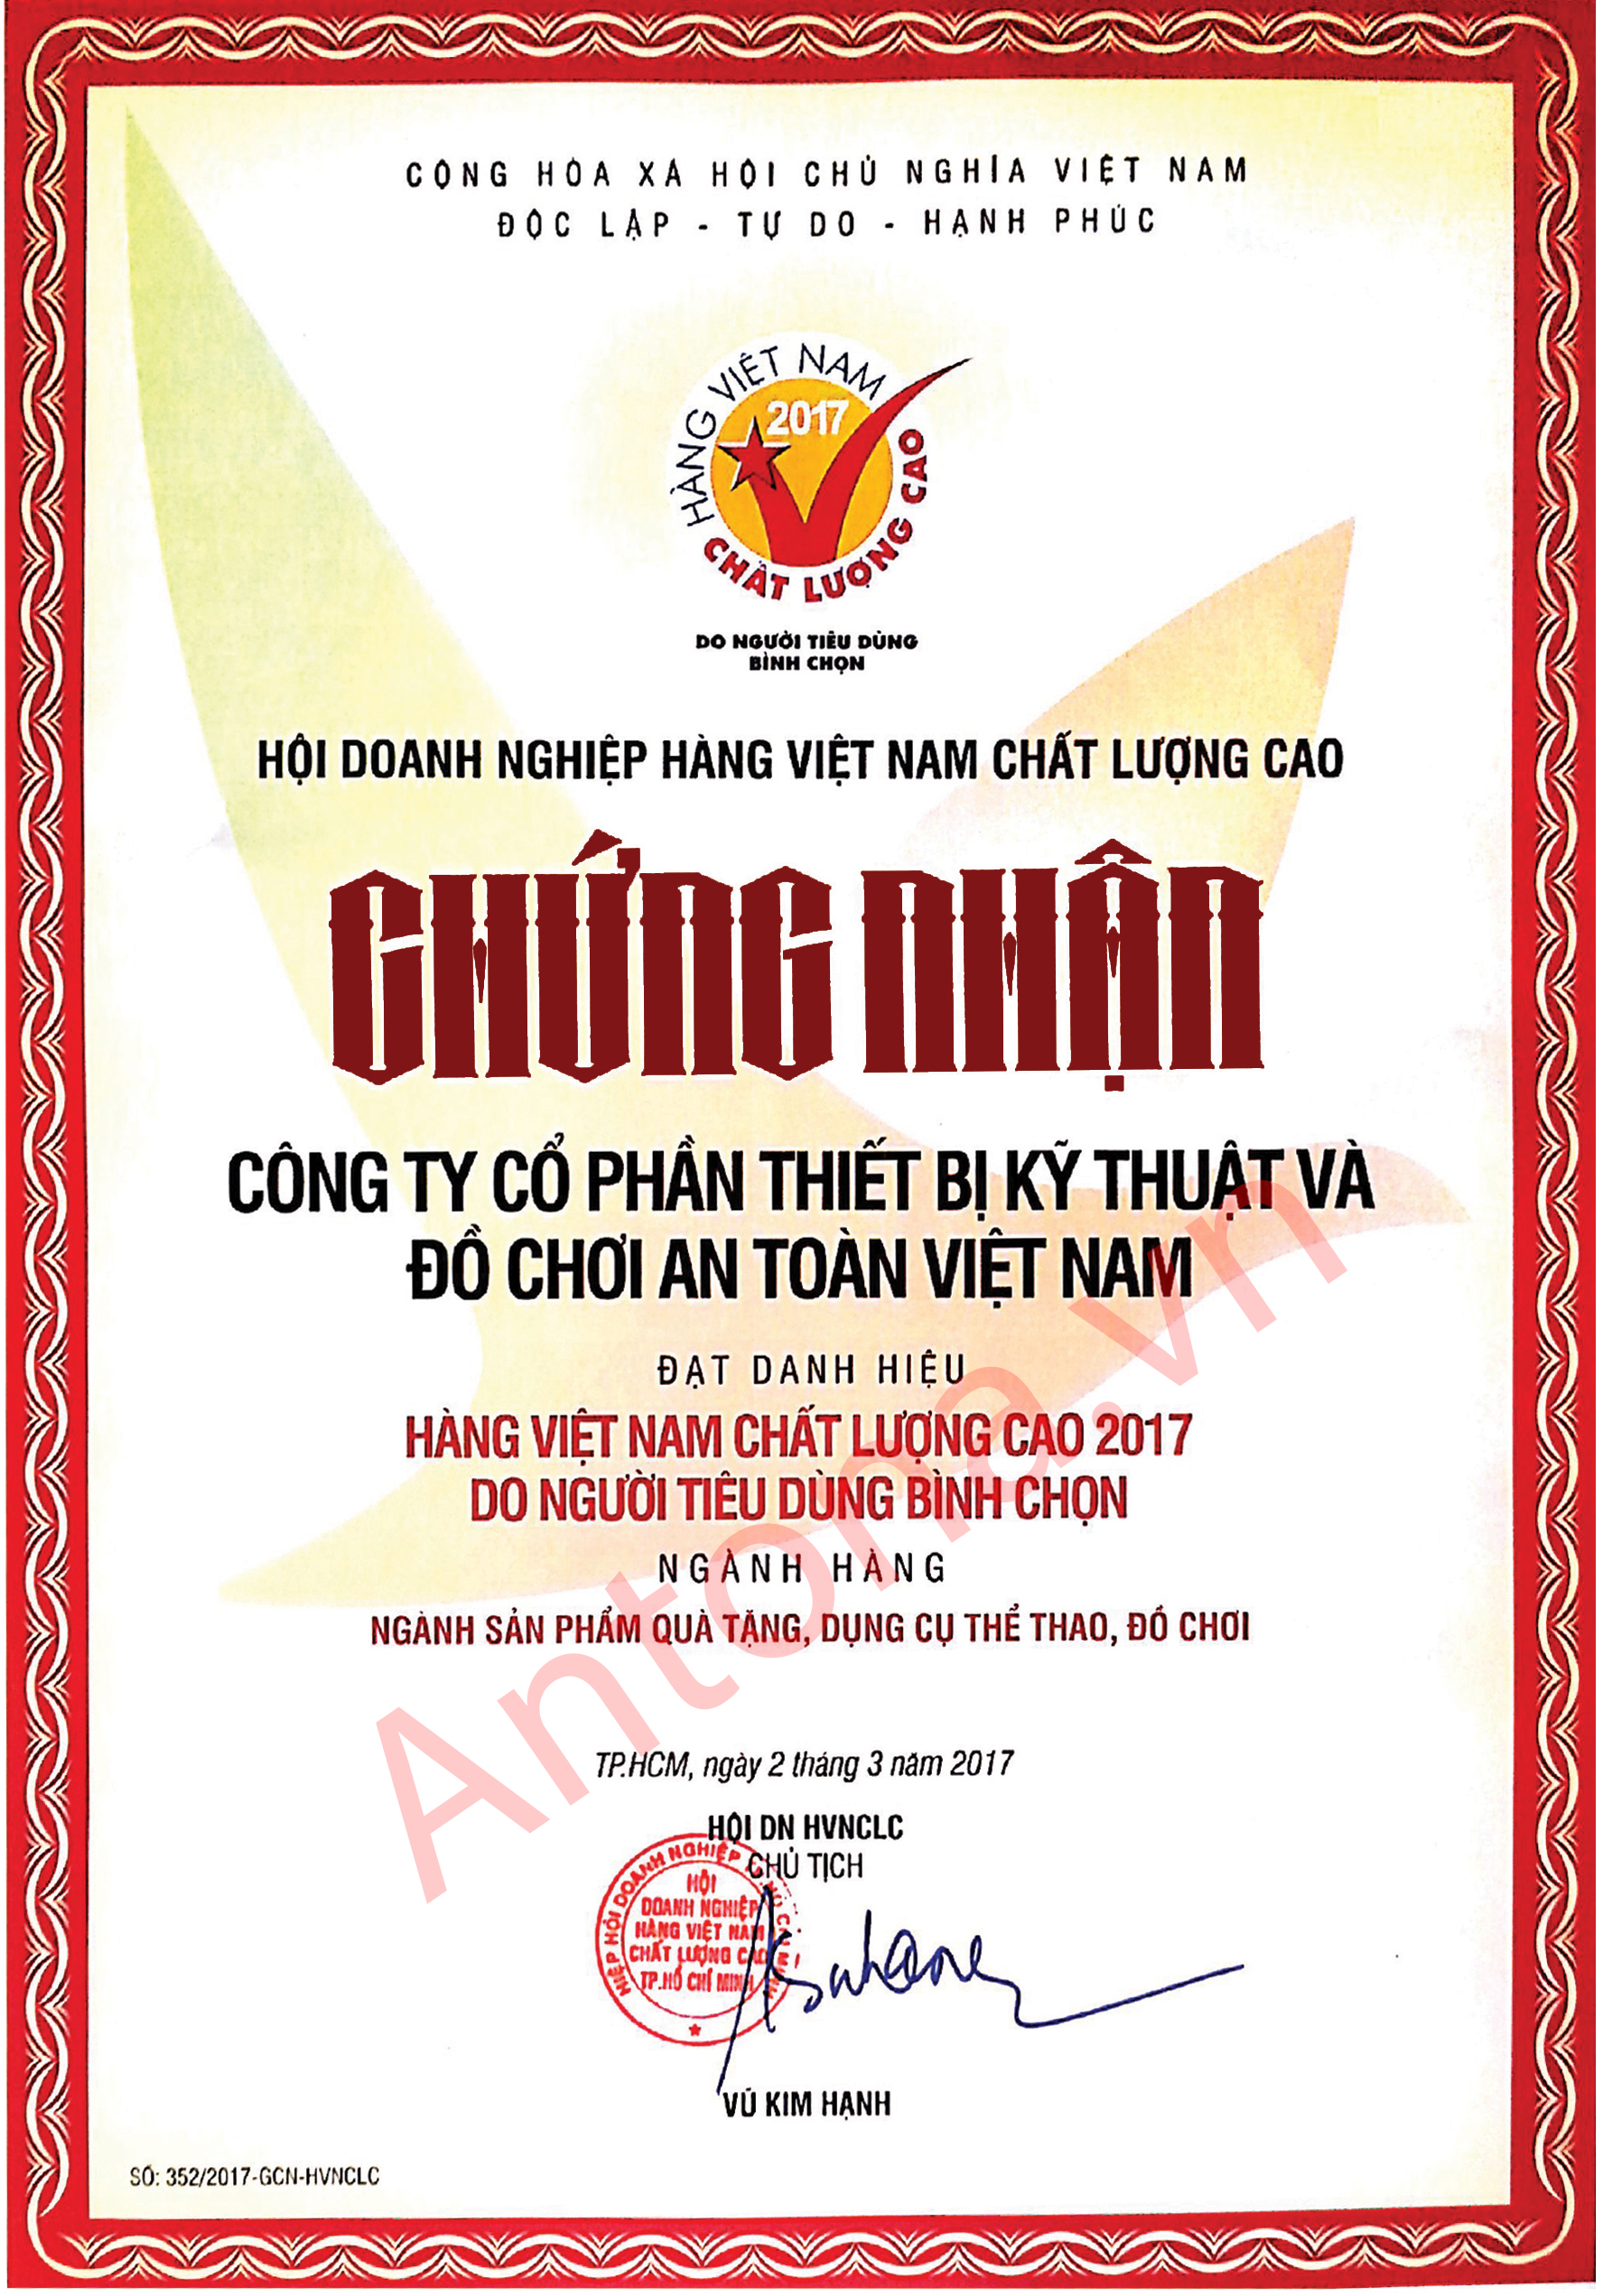 ANTONA - Tự hào hàng Việt Nam